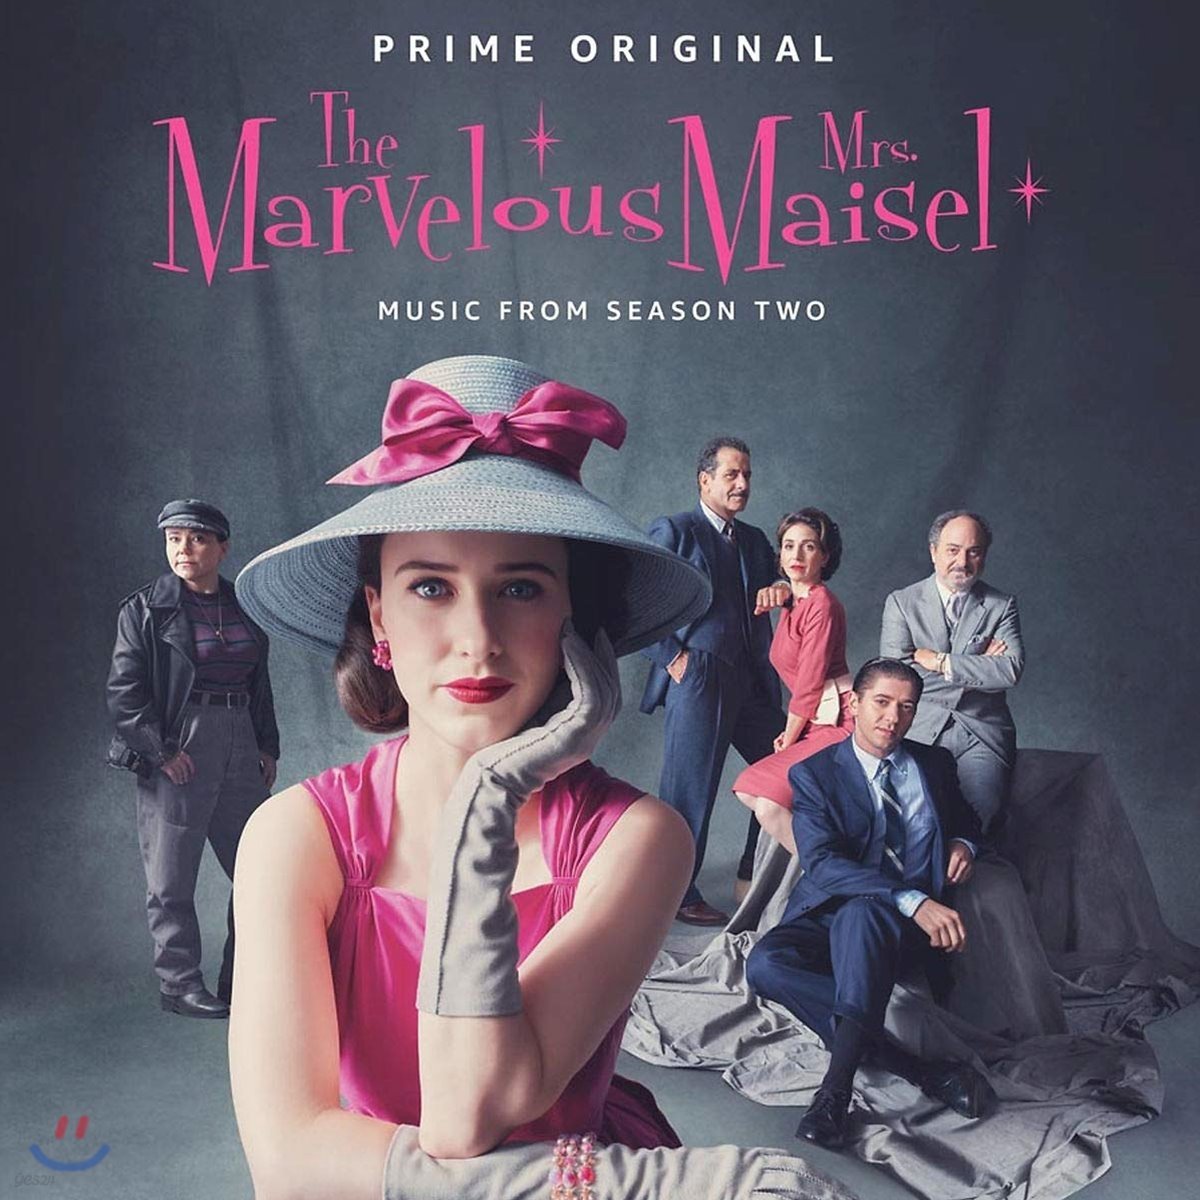 마블러브 미스 메이슬: 시즌 2 드라마 음악 (The Marvelous Mrs. Maisel: Season 2 OST)